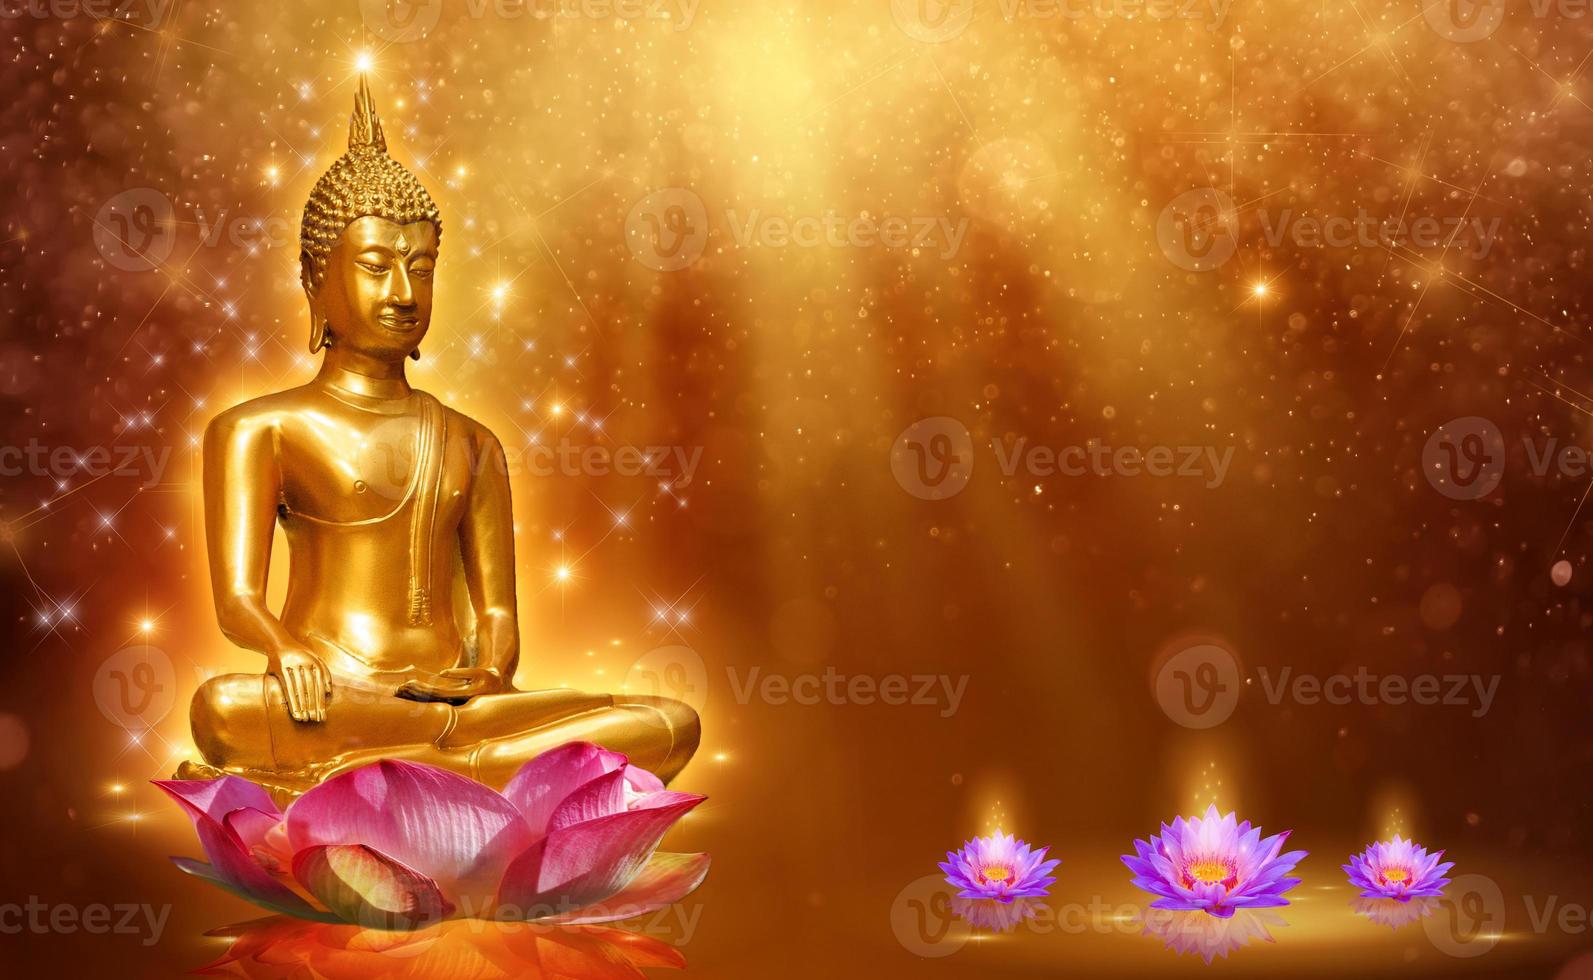 estatua de buda, agua, loto, buda, posición, en, flor de loto, en, fondo naranja foto